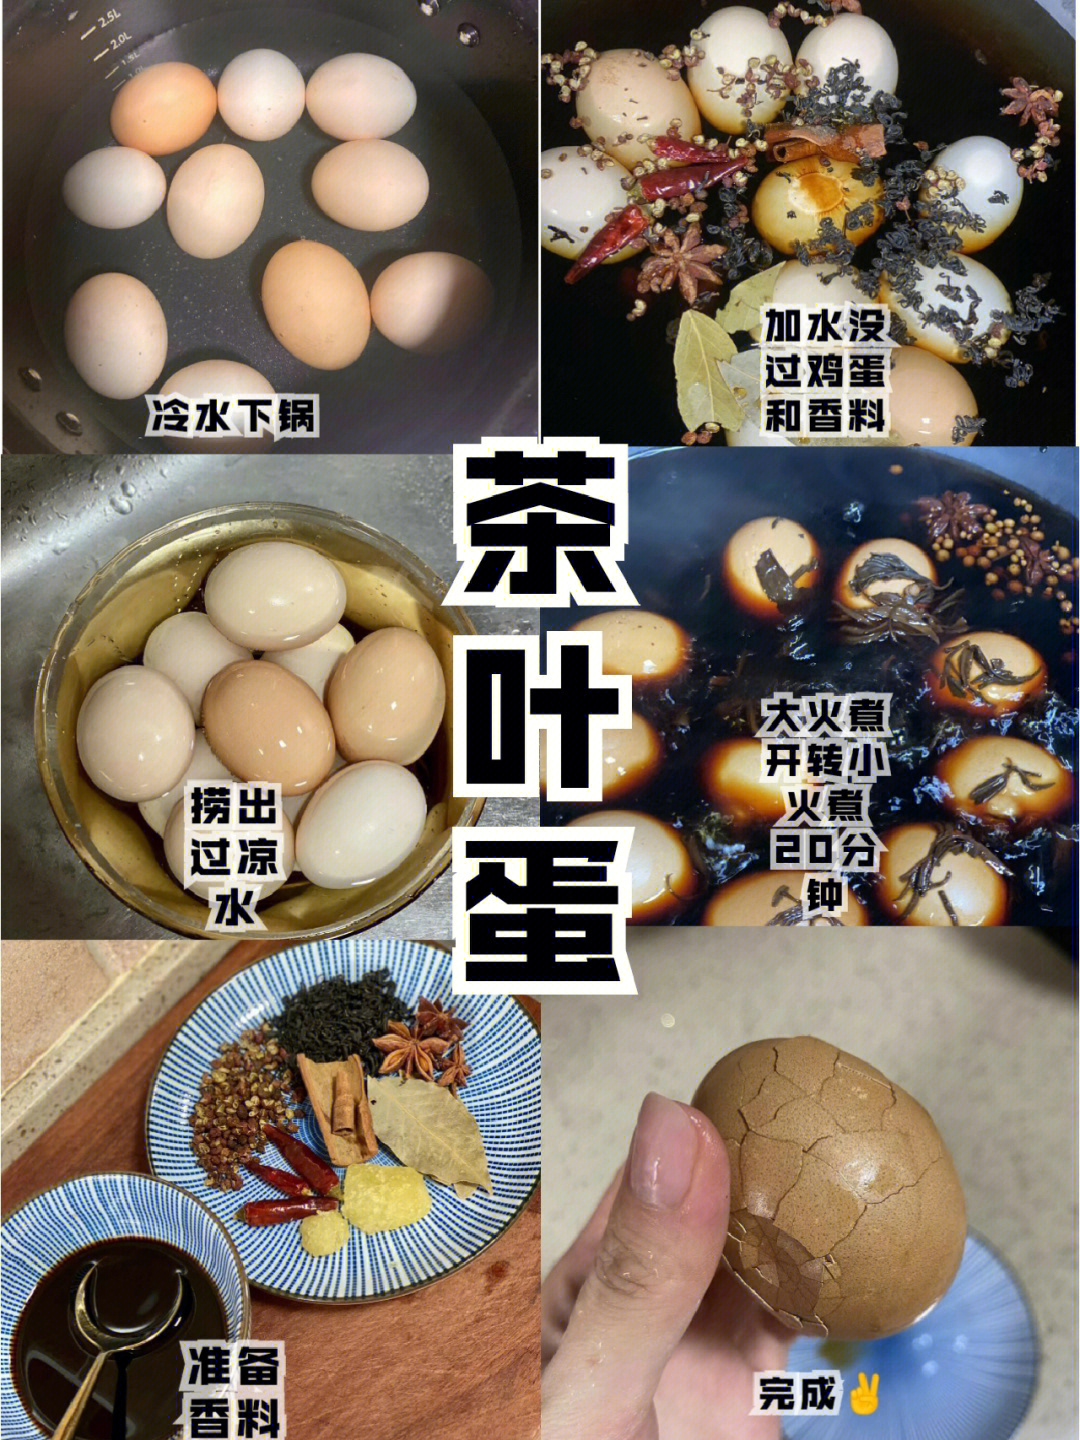 茶叶蛋的做法及配料图片